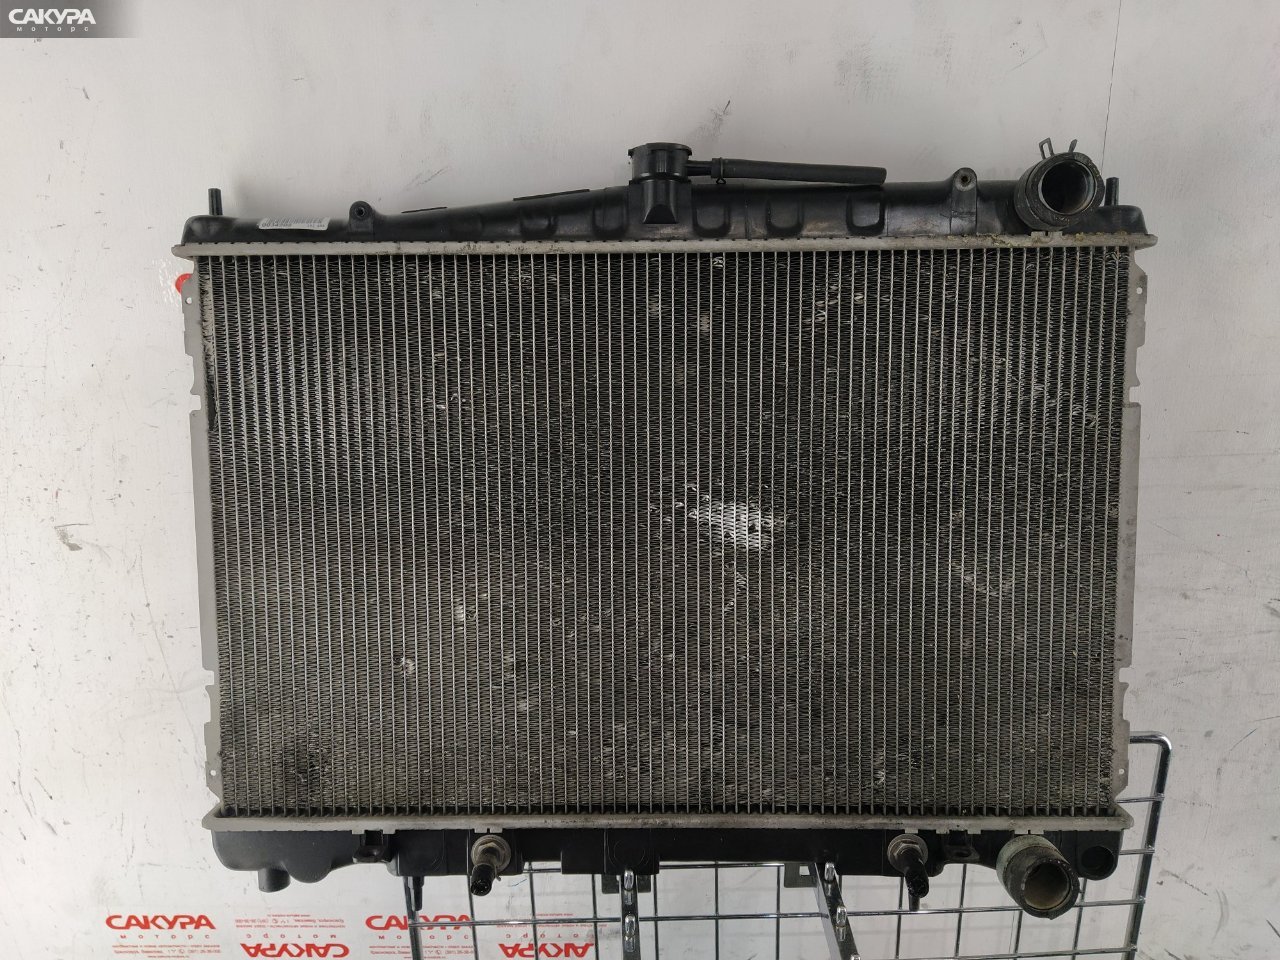 Радиатор двигателя Nissan Laurel HC35 RB20DE: купить в Сакура Красноярск.